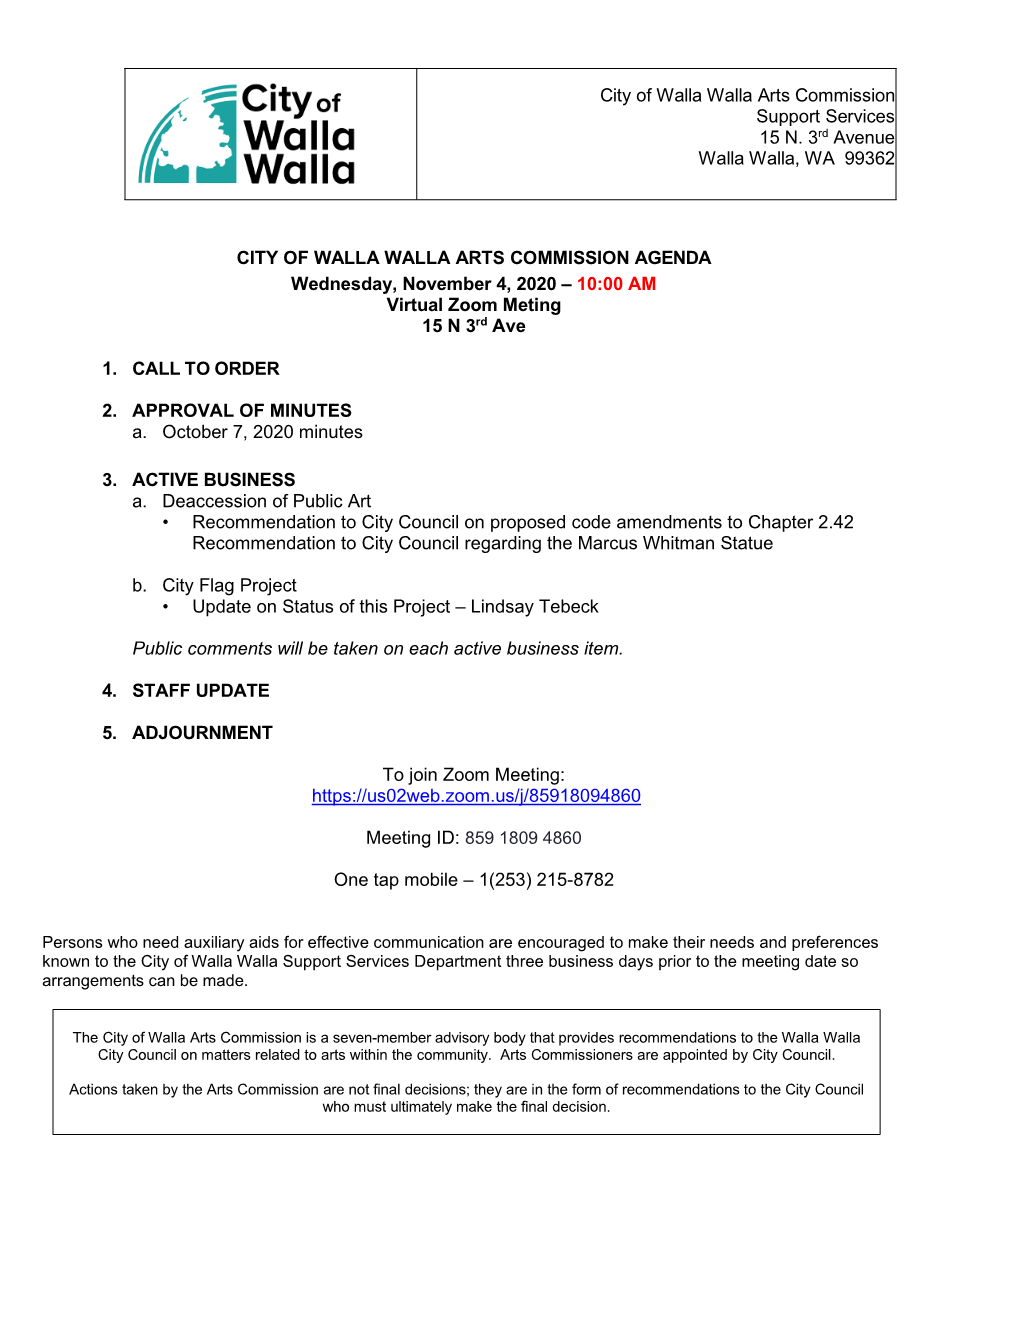 City of Walla Walla Arts Commission Support Services 15 N. 3Rd Avenue Walla Walla, WA 99362